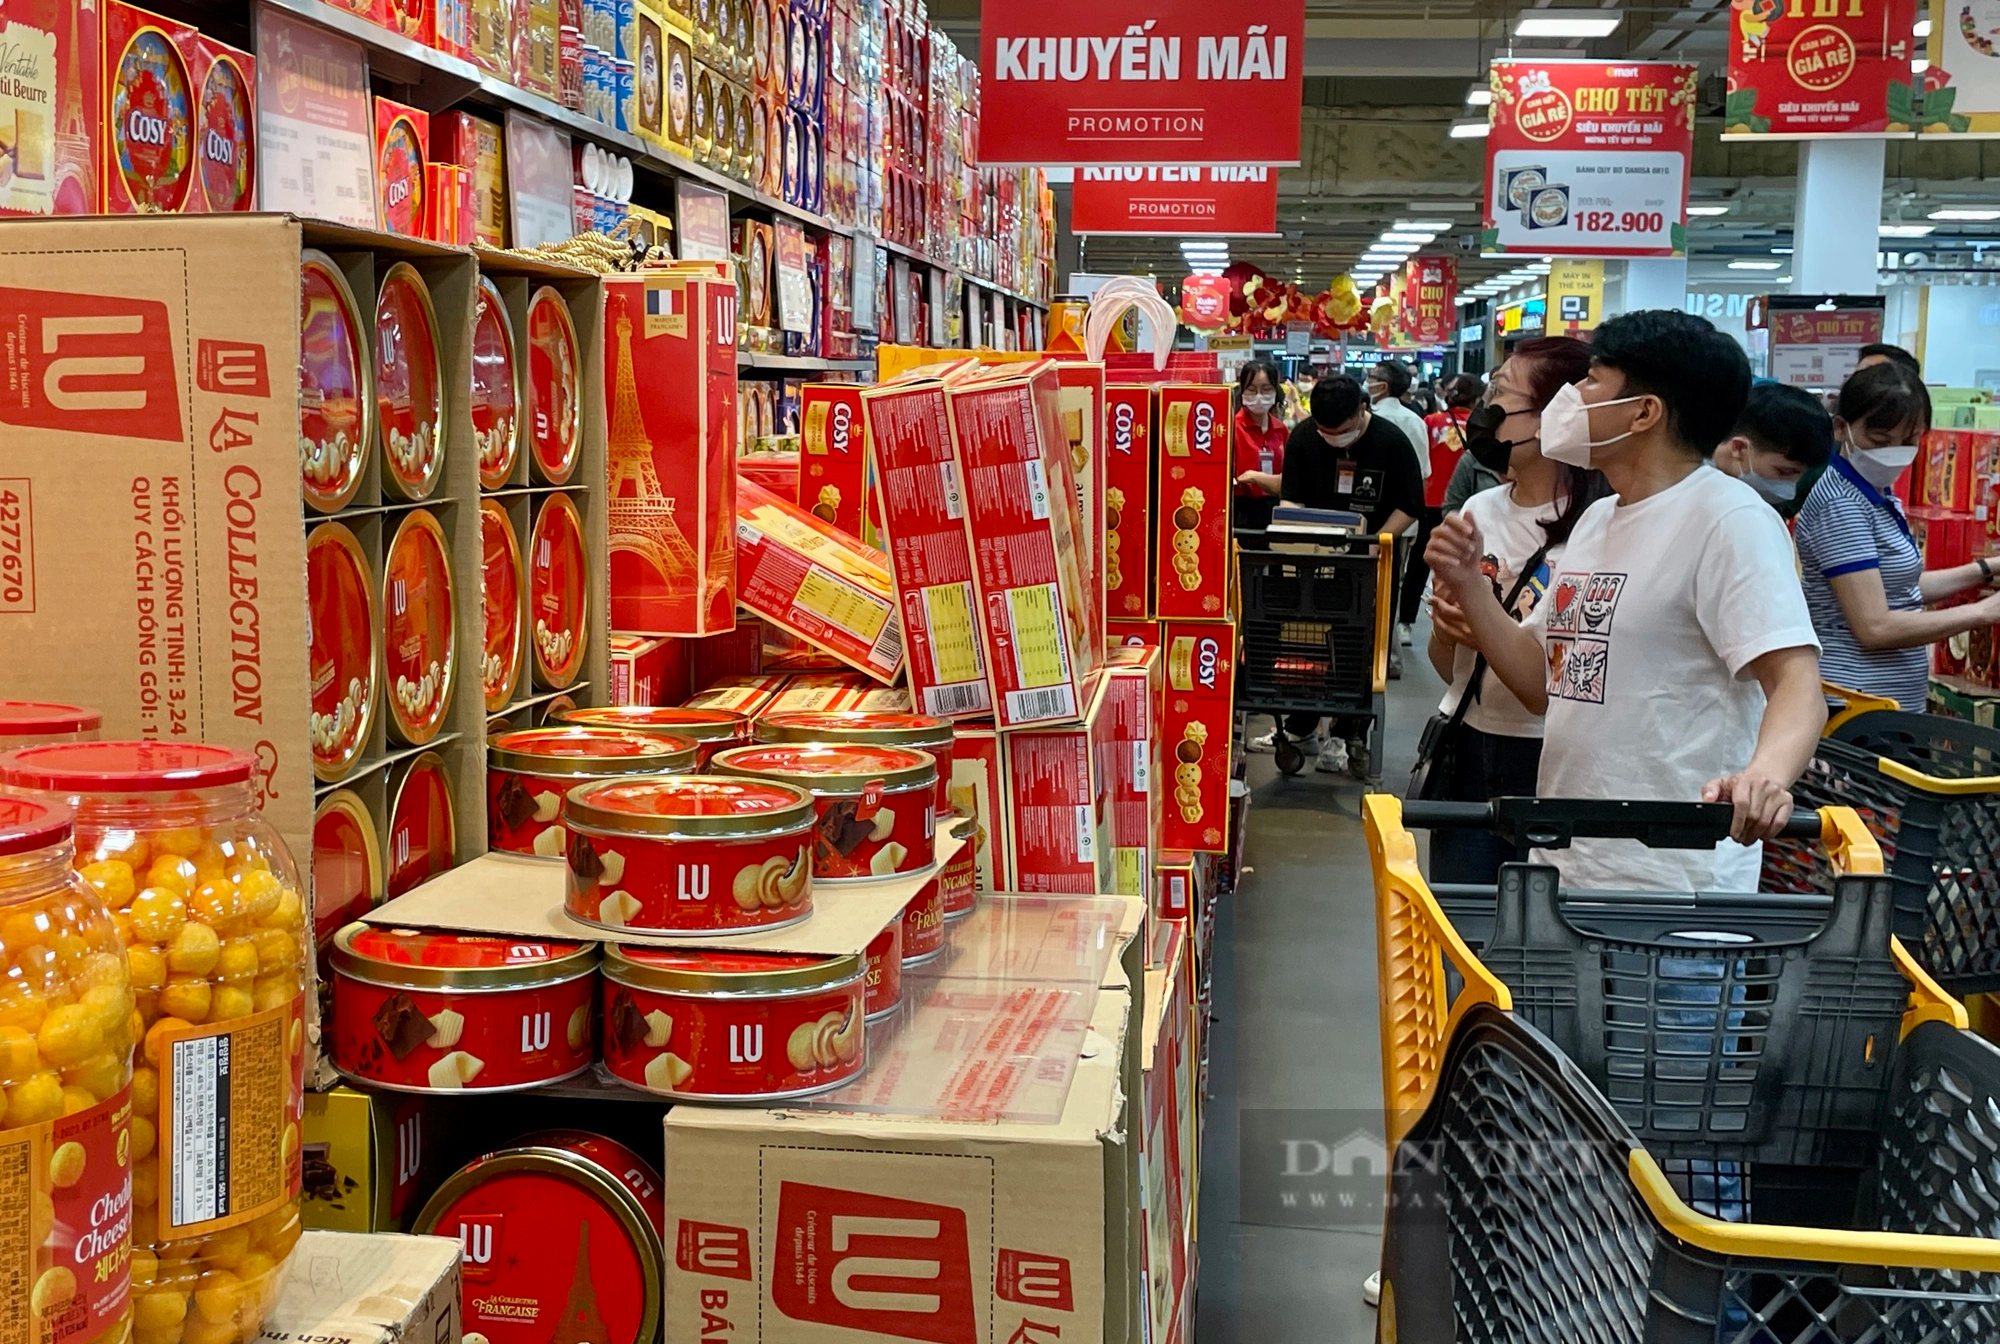 Hàng Tết đang giảm giá tưng bừng tại siêu thị - Ảnh 1.